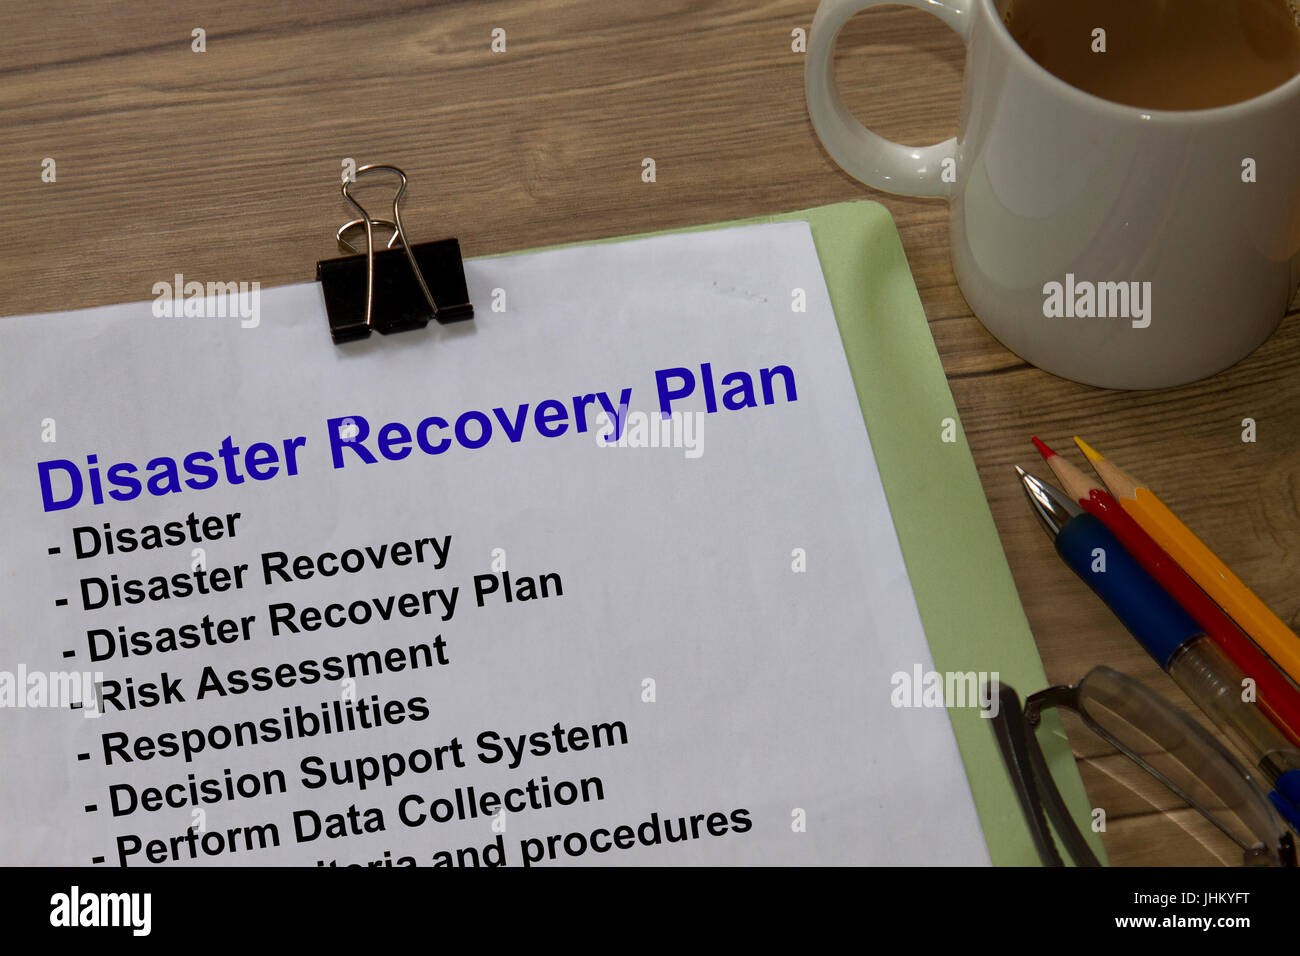 Disaster Recovery-Plan - viele Anwendungen in der Bauindustrie. Stockfoto